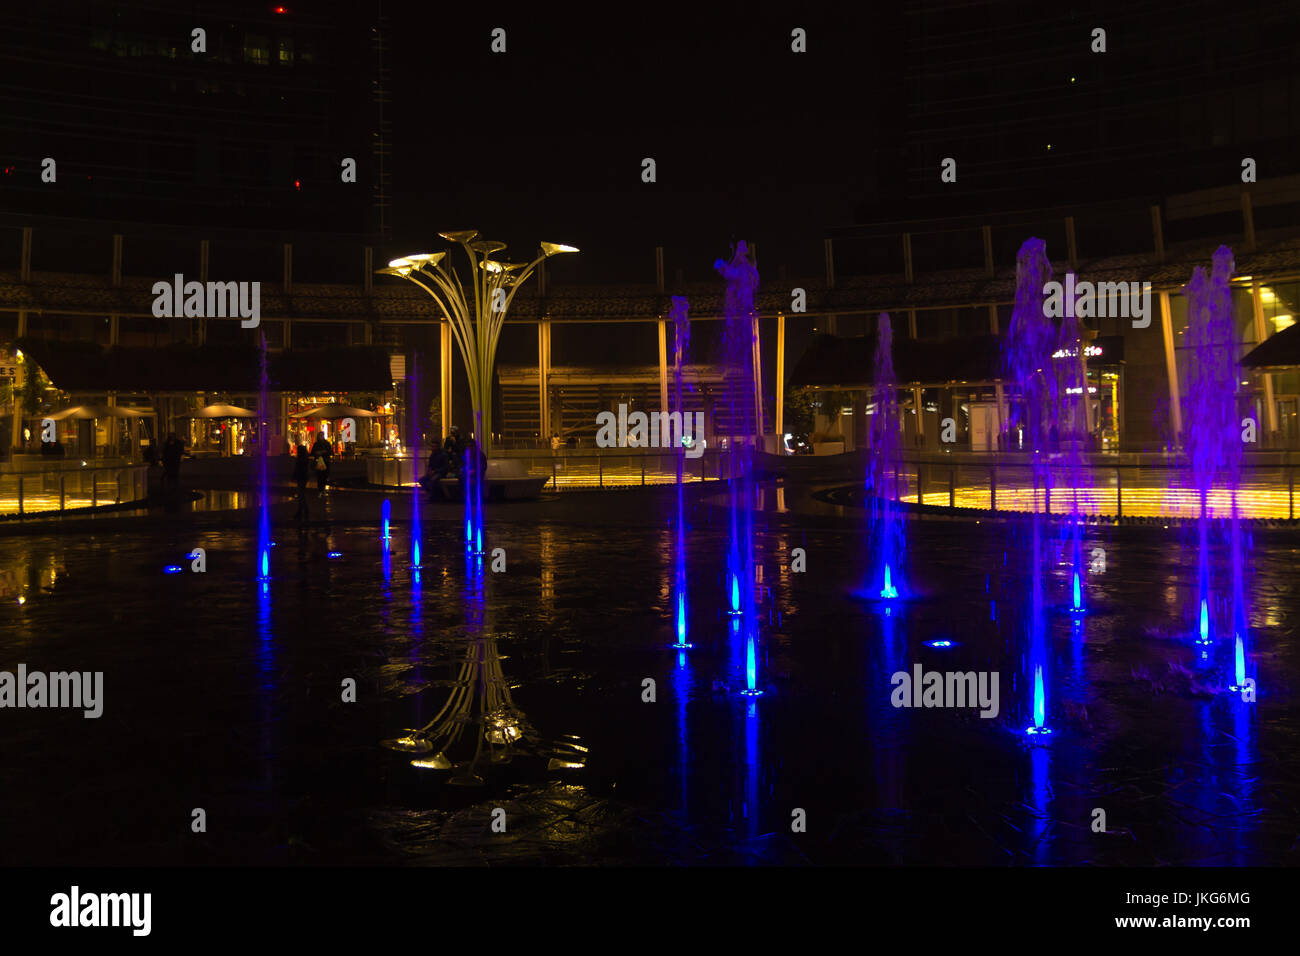 MILAN, ITALIE - 30 octobre 2016 : financial district Vue de nuit. L'eau des fontaines illuminées. Les gratte-ciel modernes dans Gae Aulenti square. La banque Unicredit à Banque D'Images